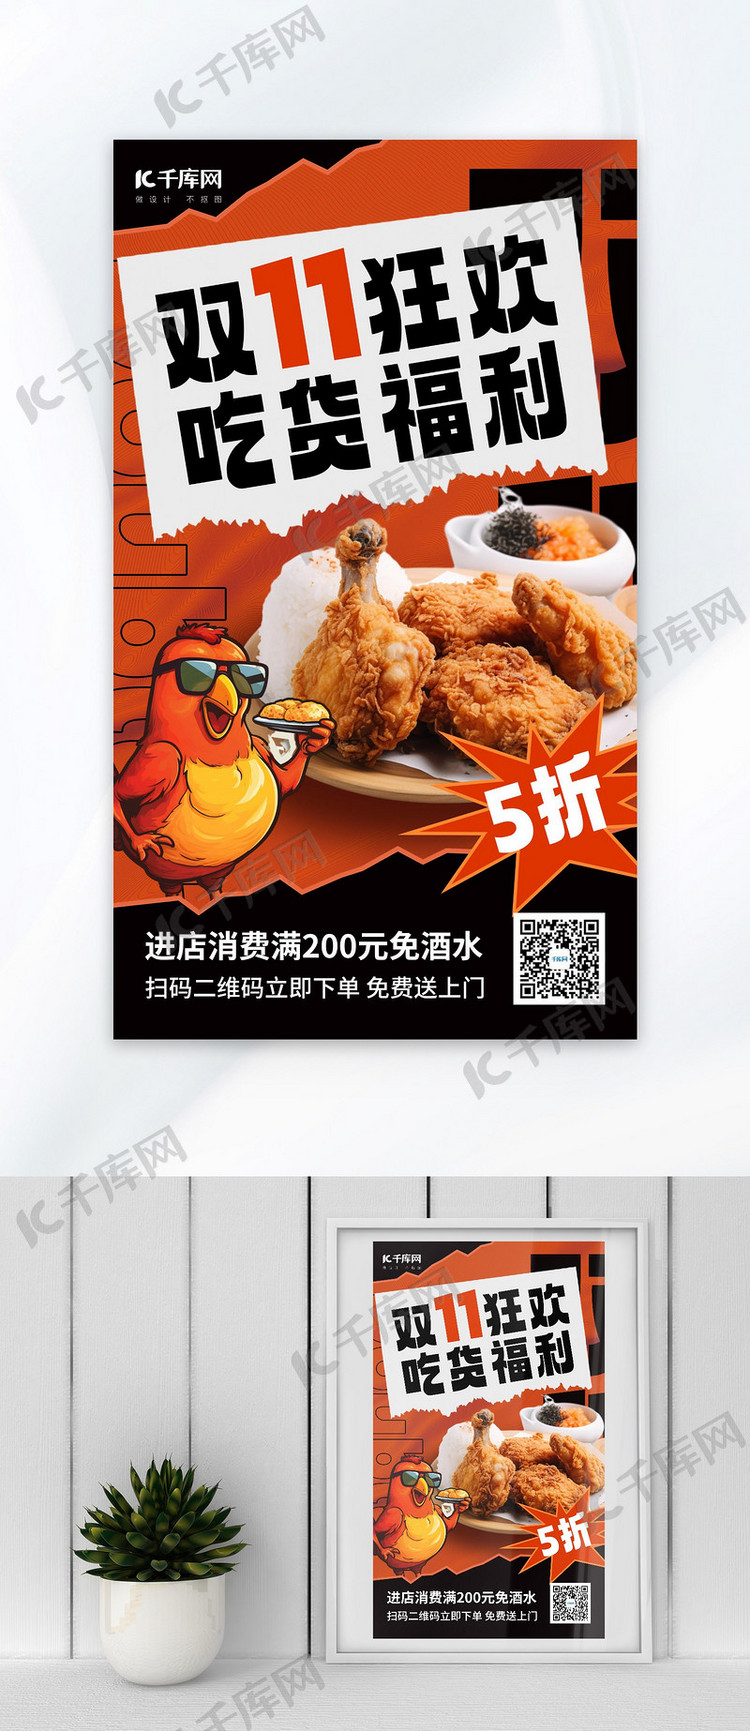 双11美食炸鸡促销红色AIGC海报